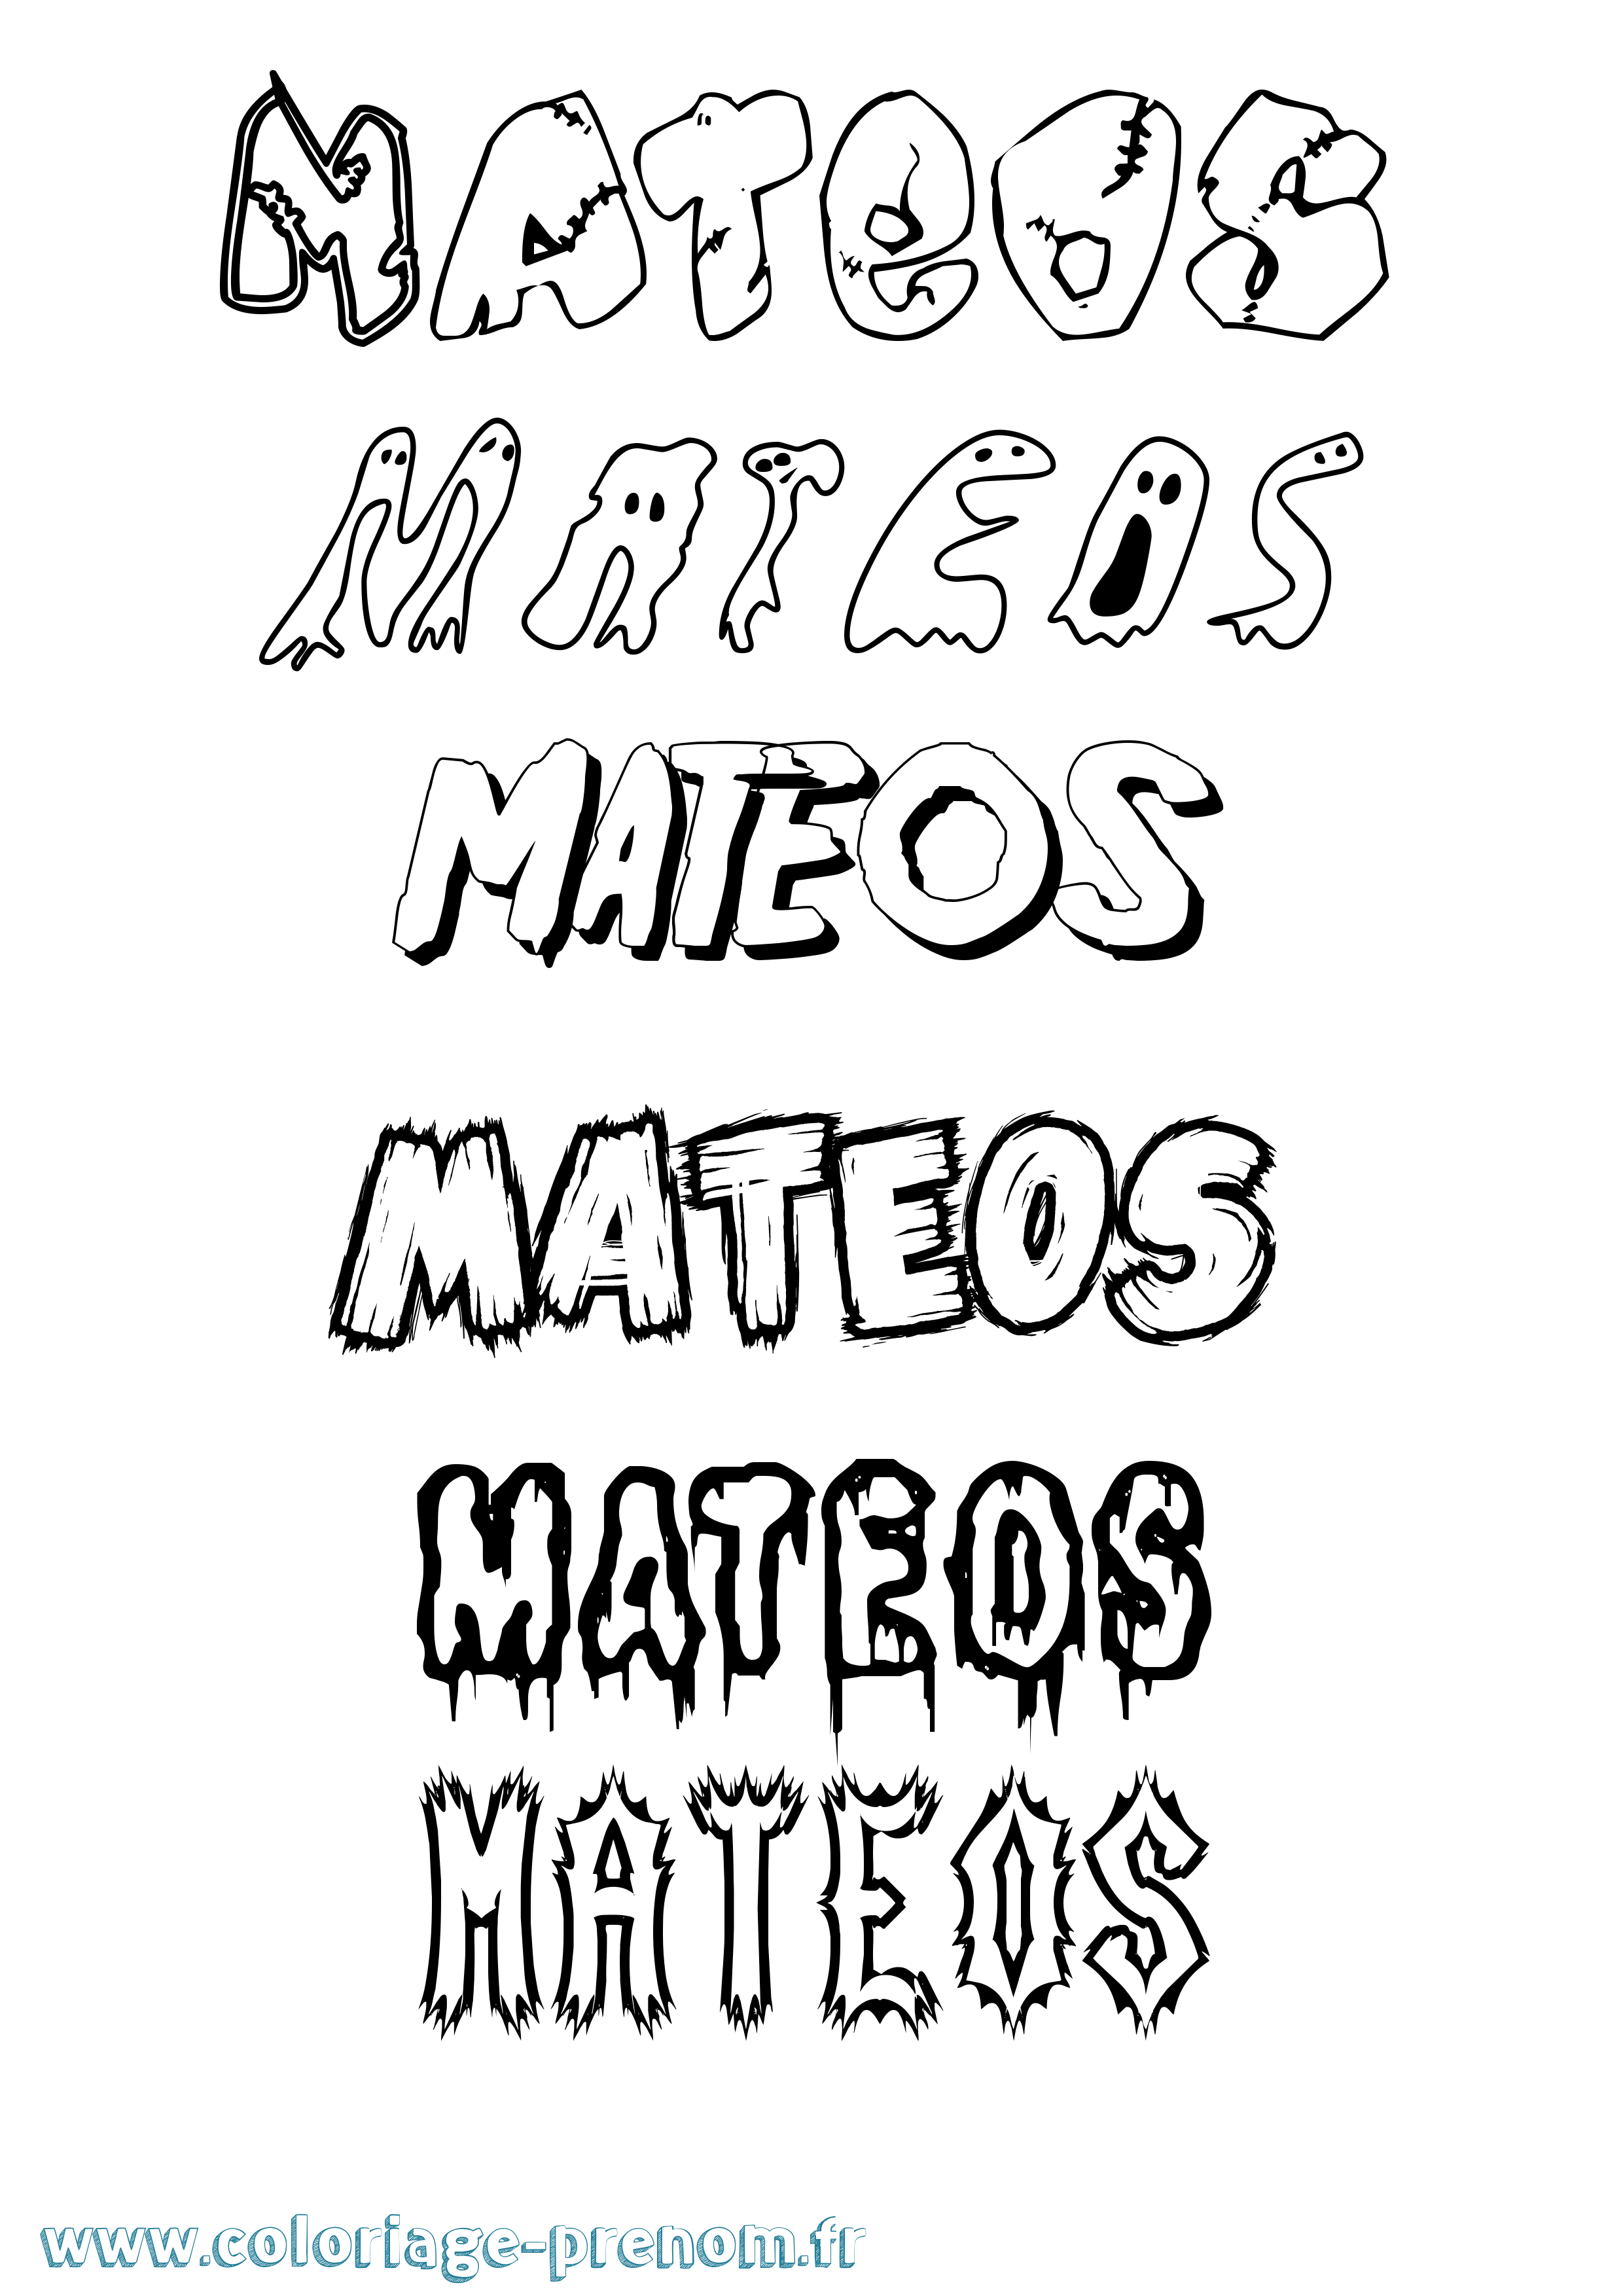 Coloriage prénom Mateos Frisson